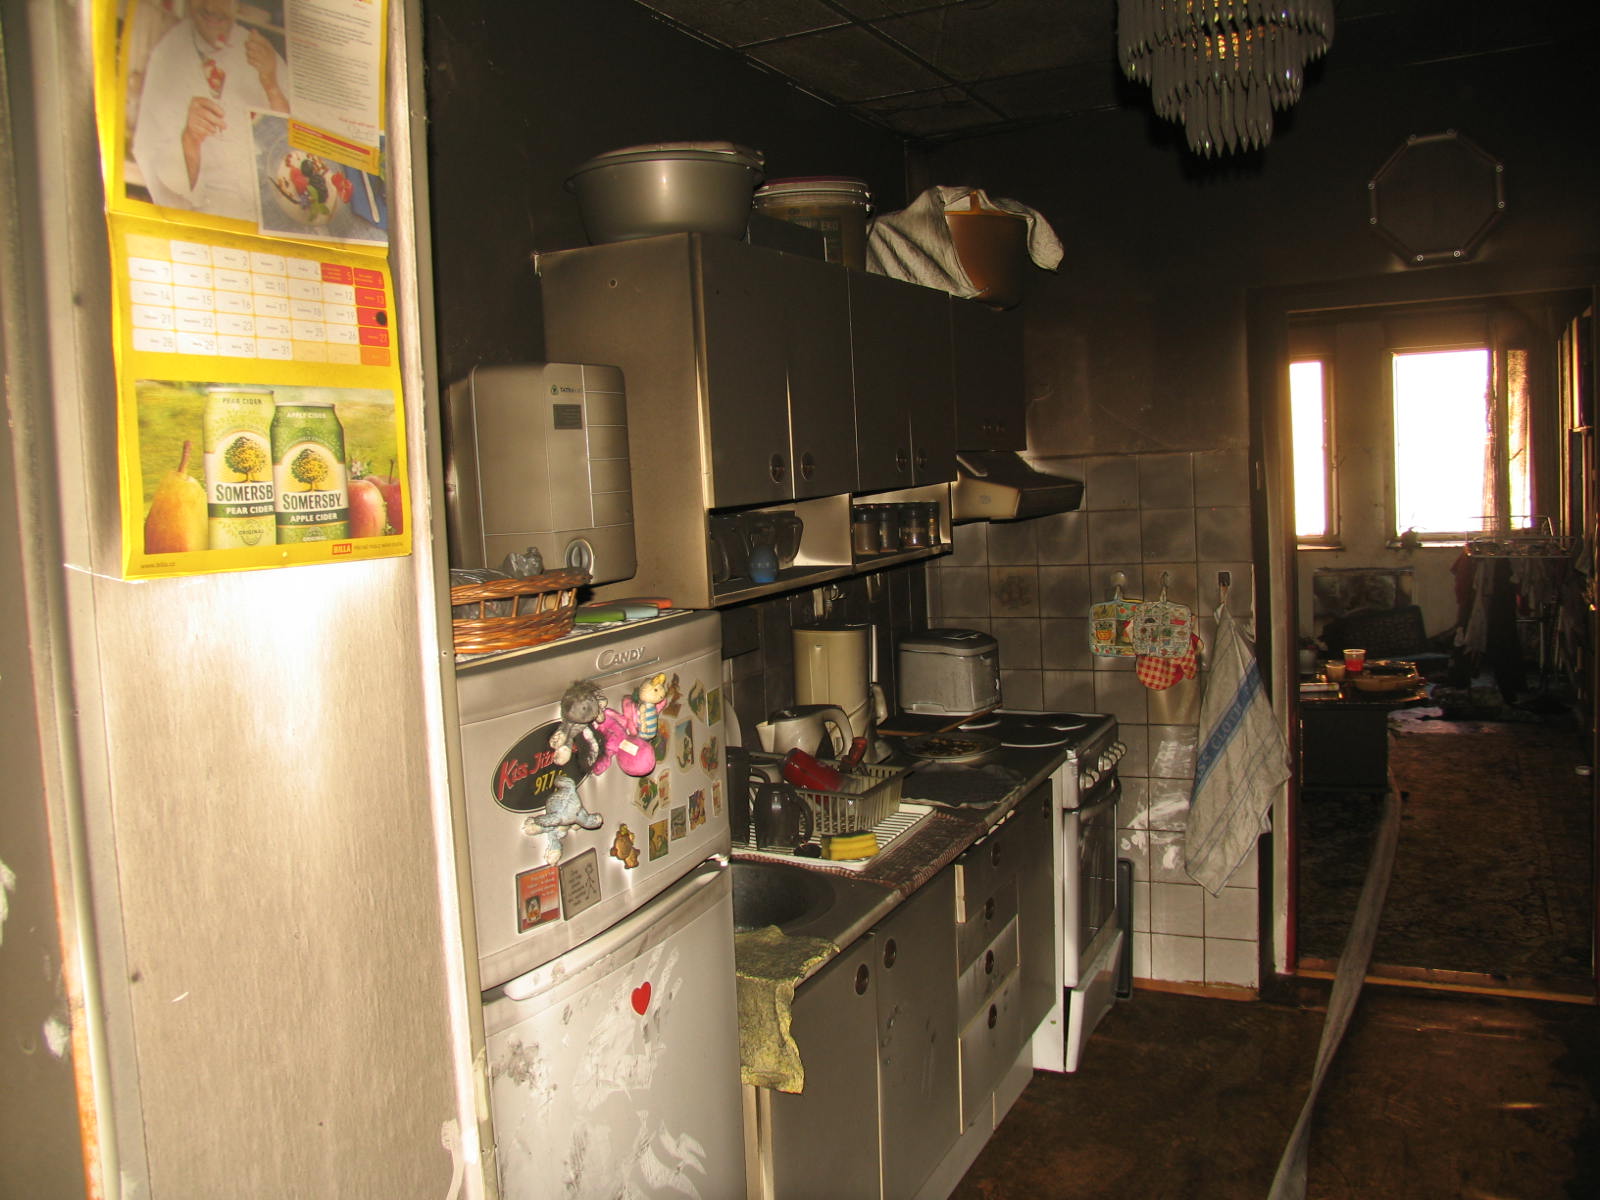 1 Požár bytu, Milevsko - 25. 8. 2014 (3).jpg